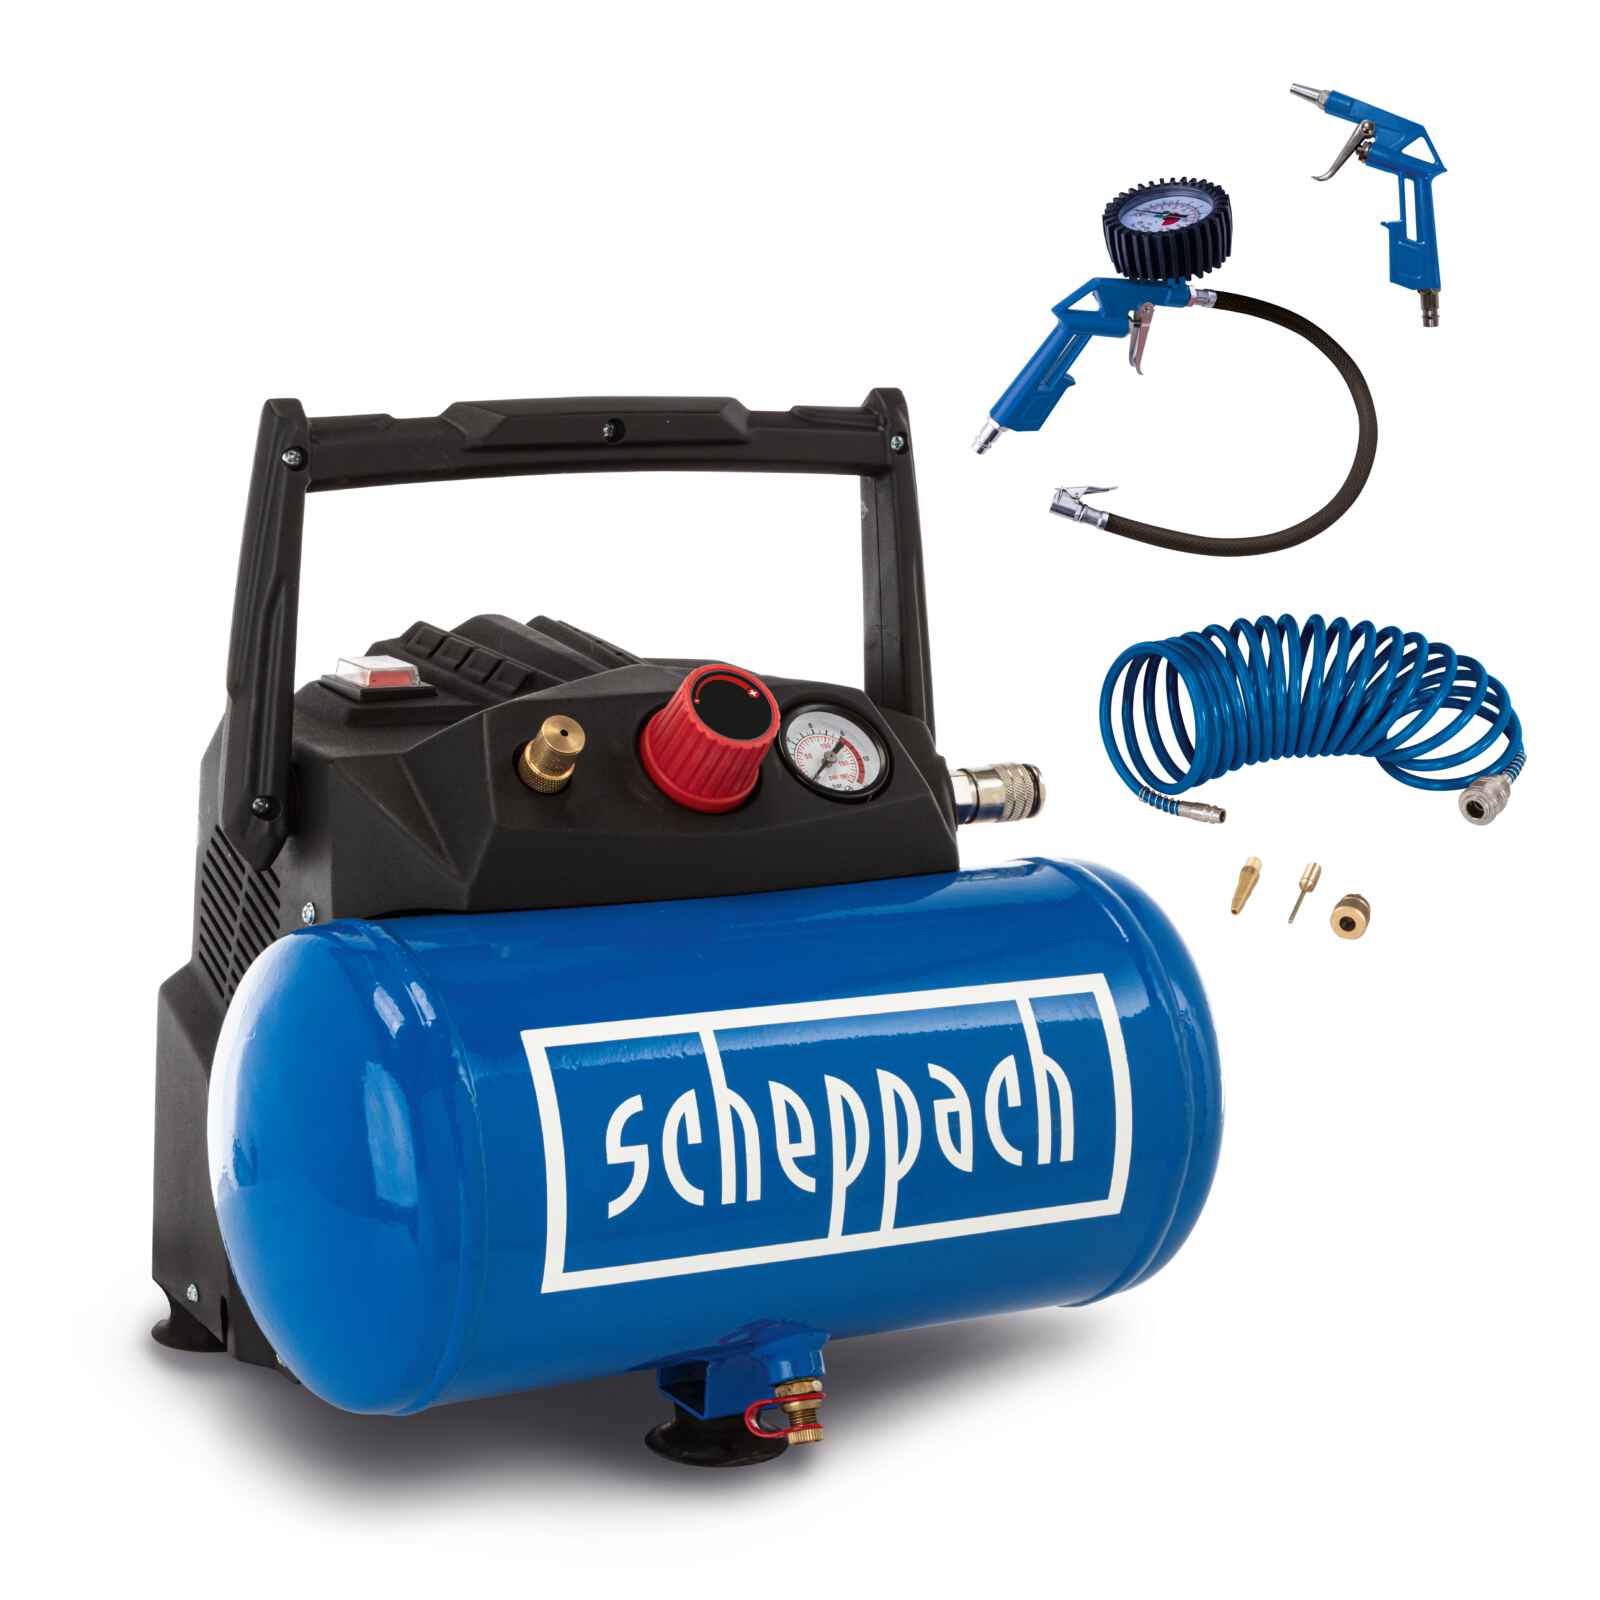 Benzin Hochdruckreiniger HCP2600 Scheppach - 4,4PS